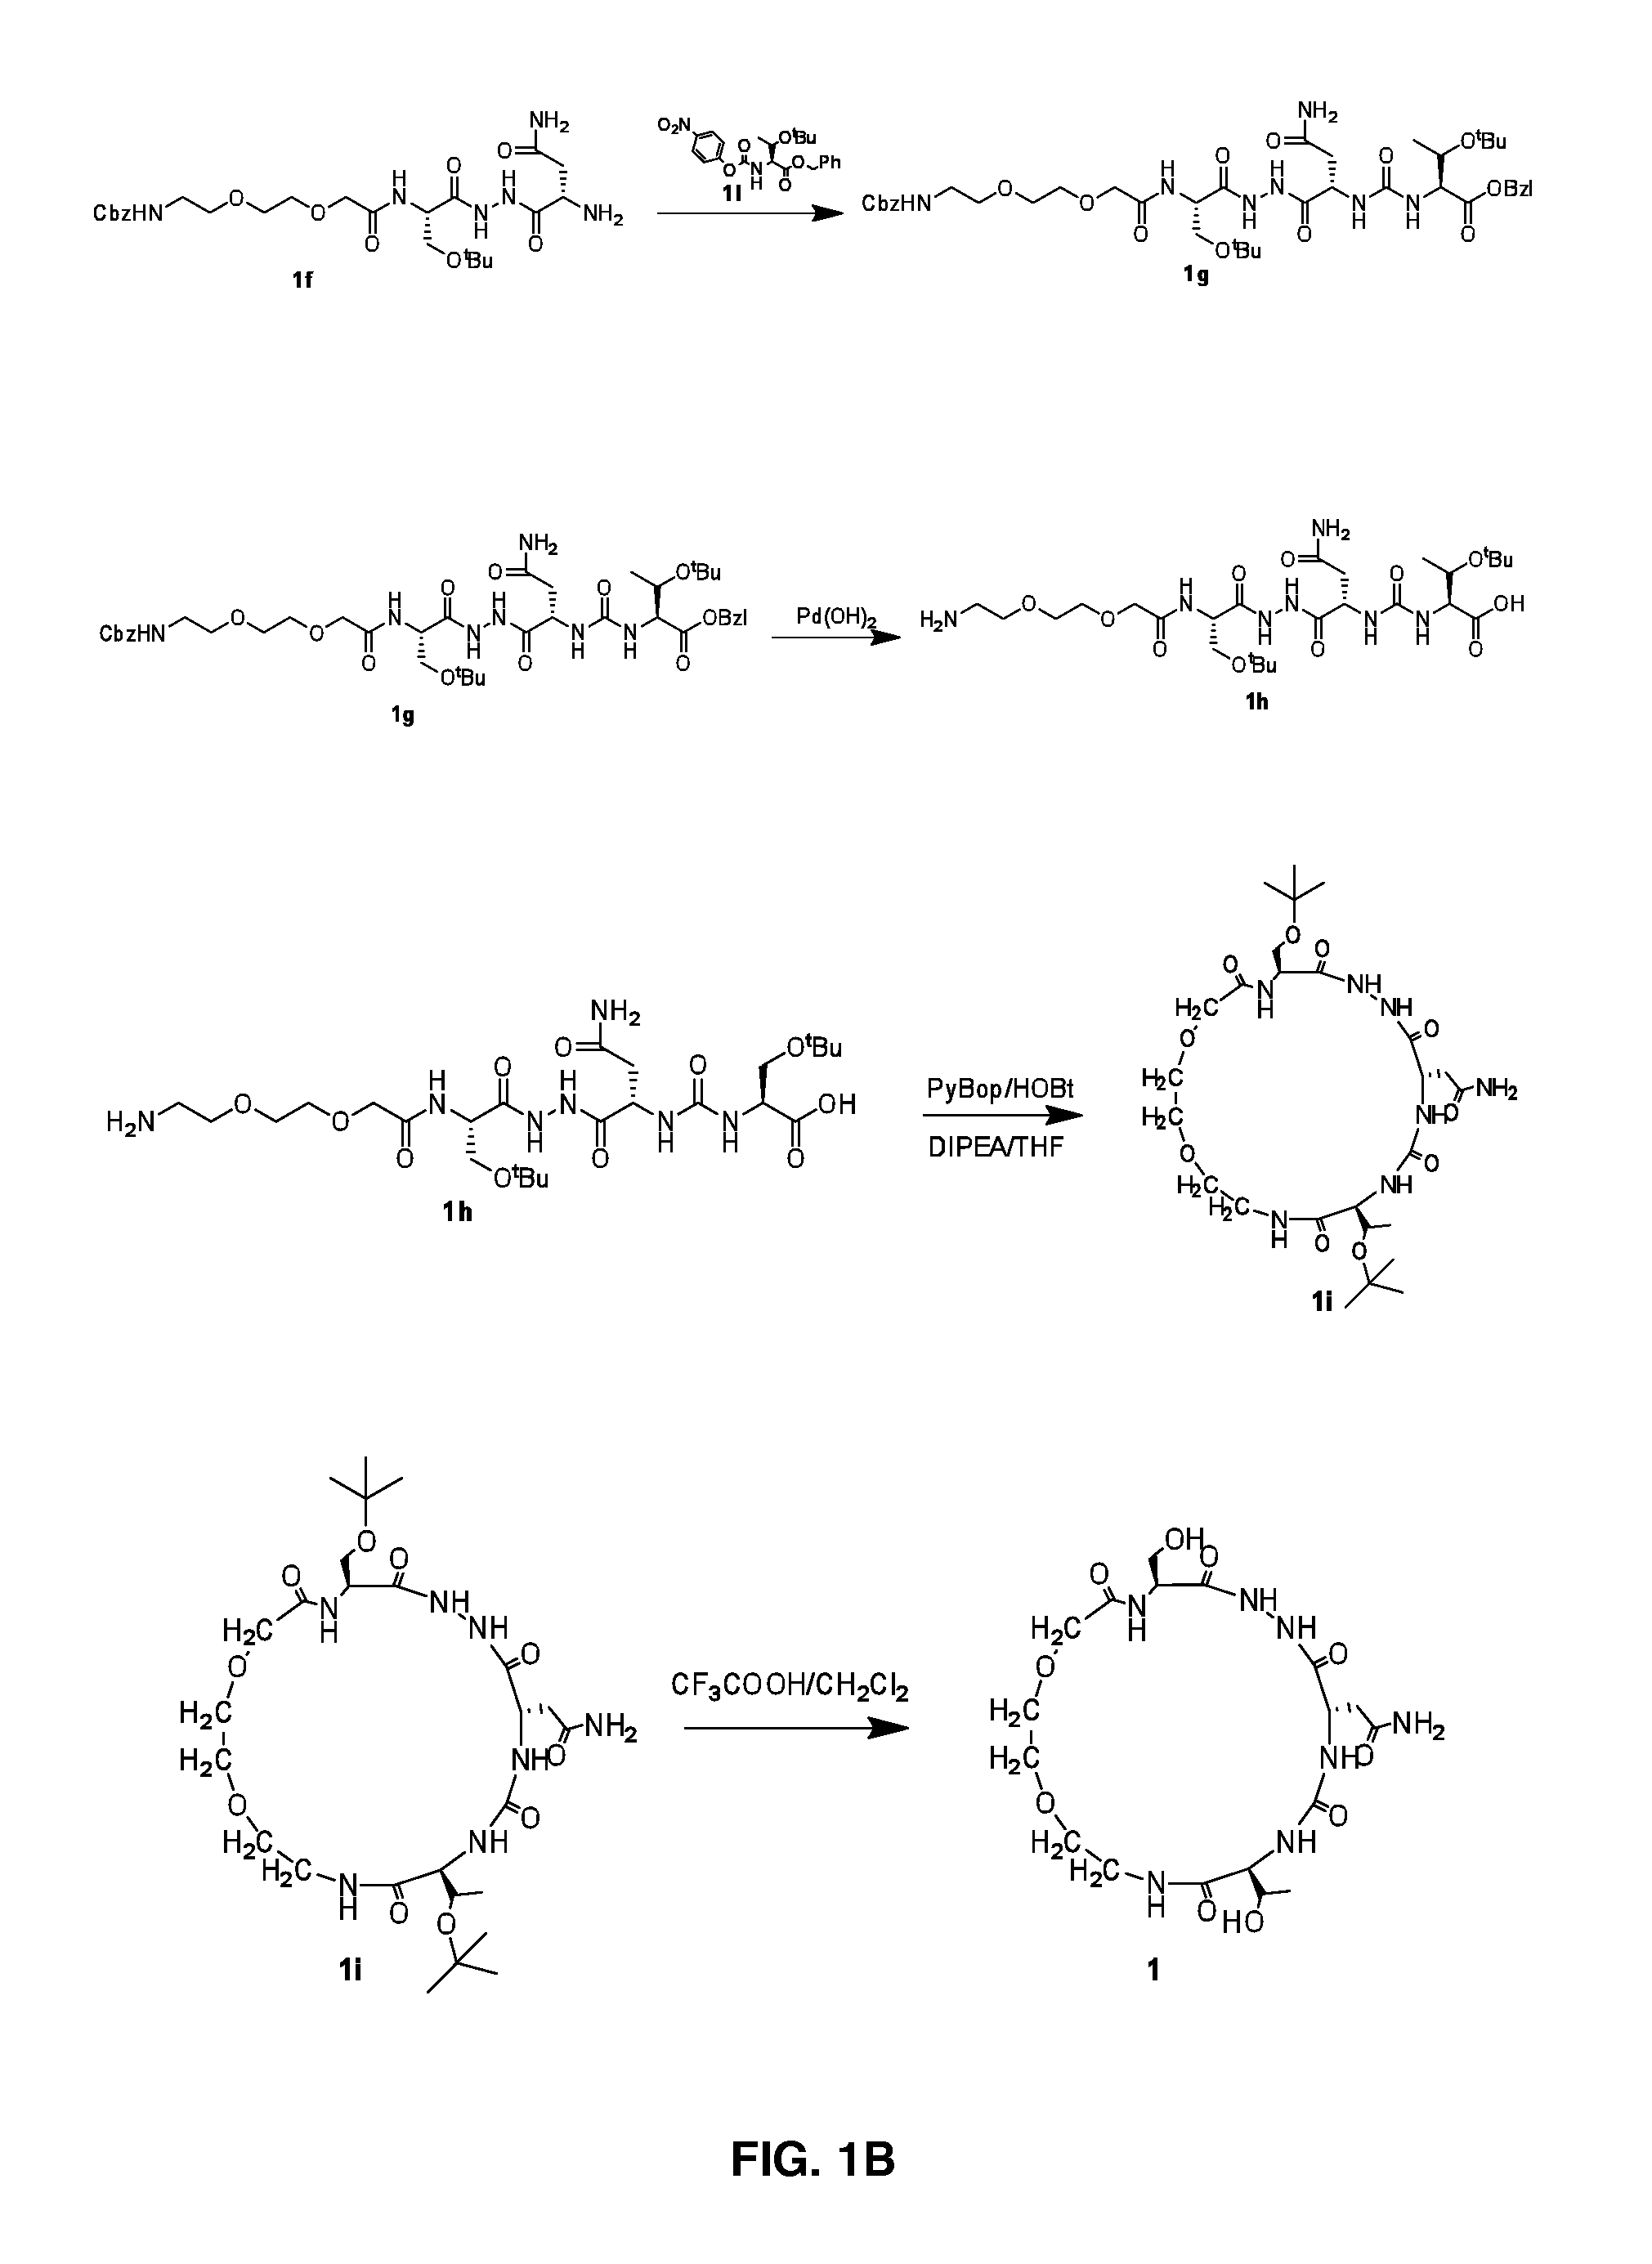 Cyclic Peptidomimetic Compounds as Immunomodulators